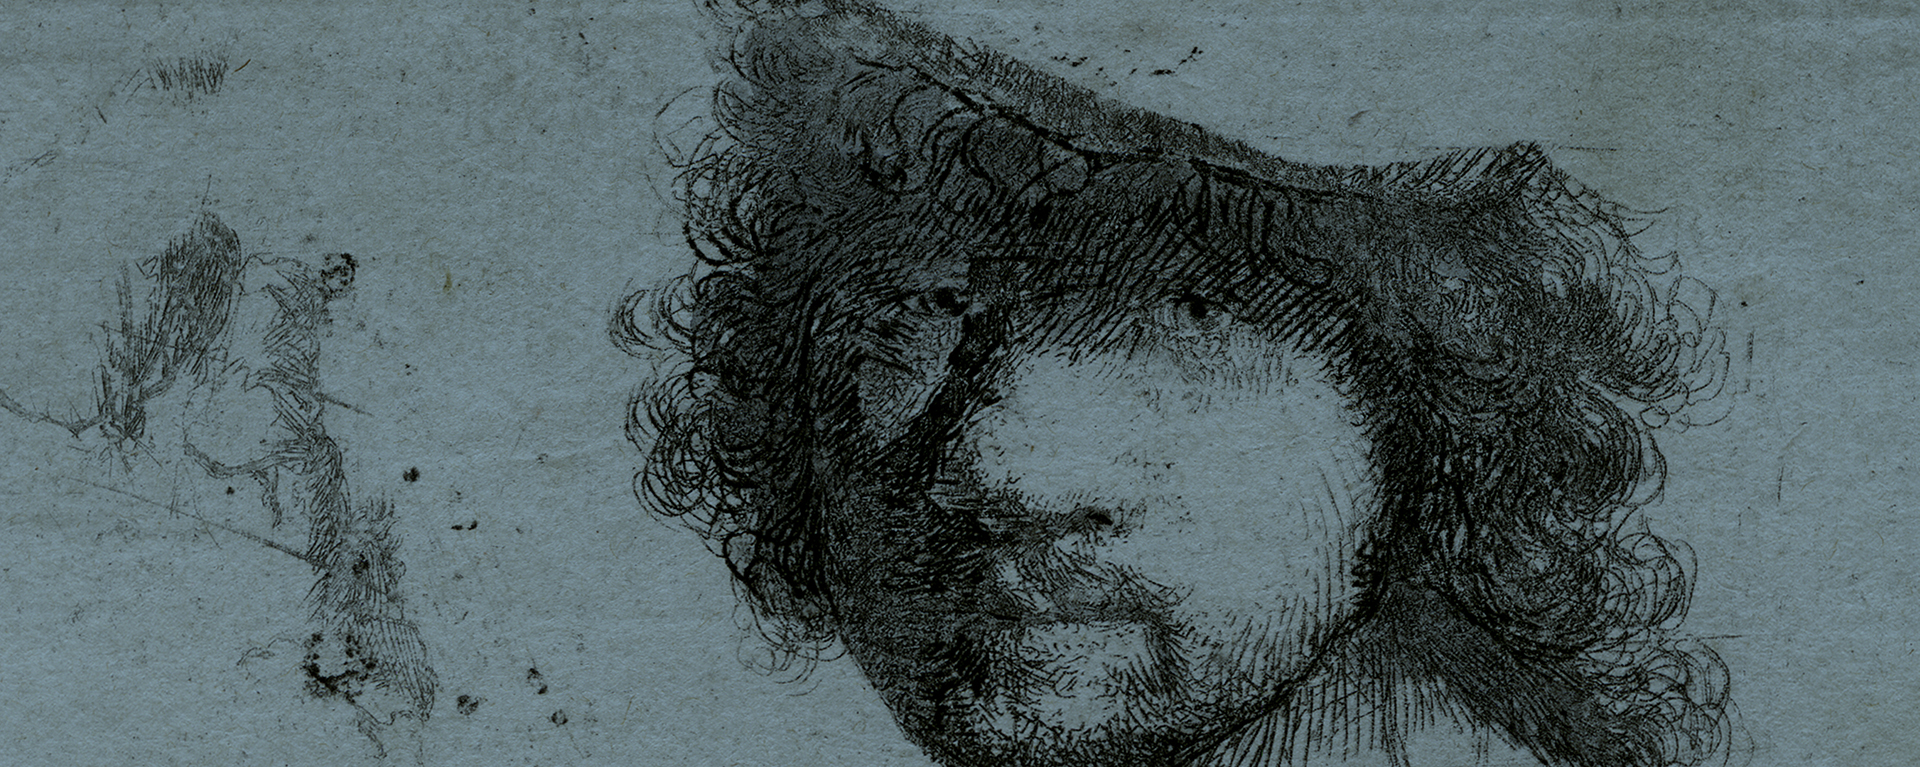 Rembrandt Van Rijn - etching - head of artist